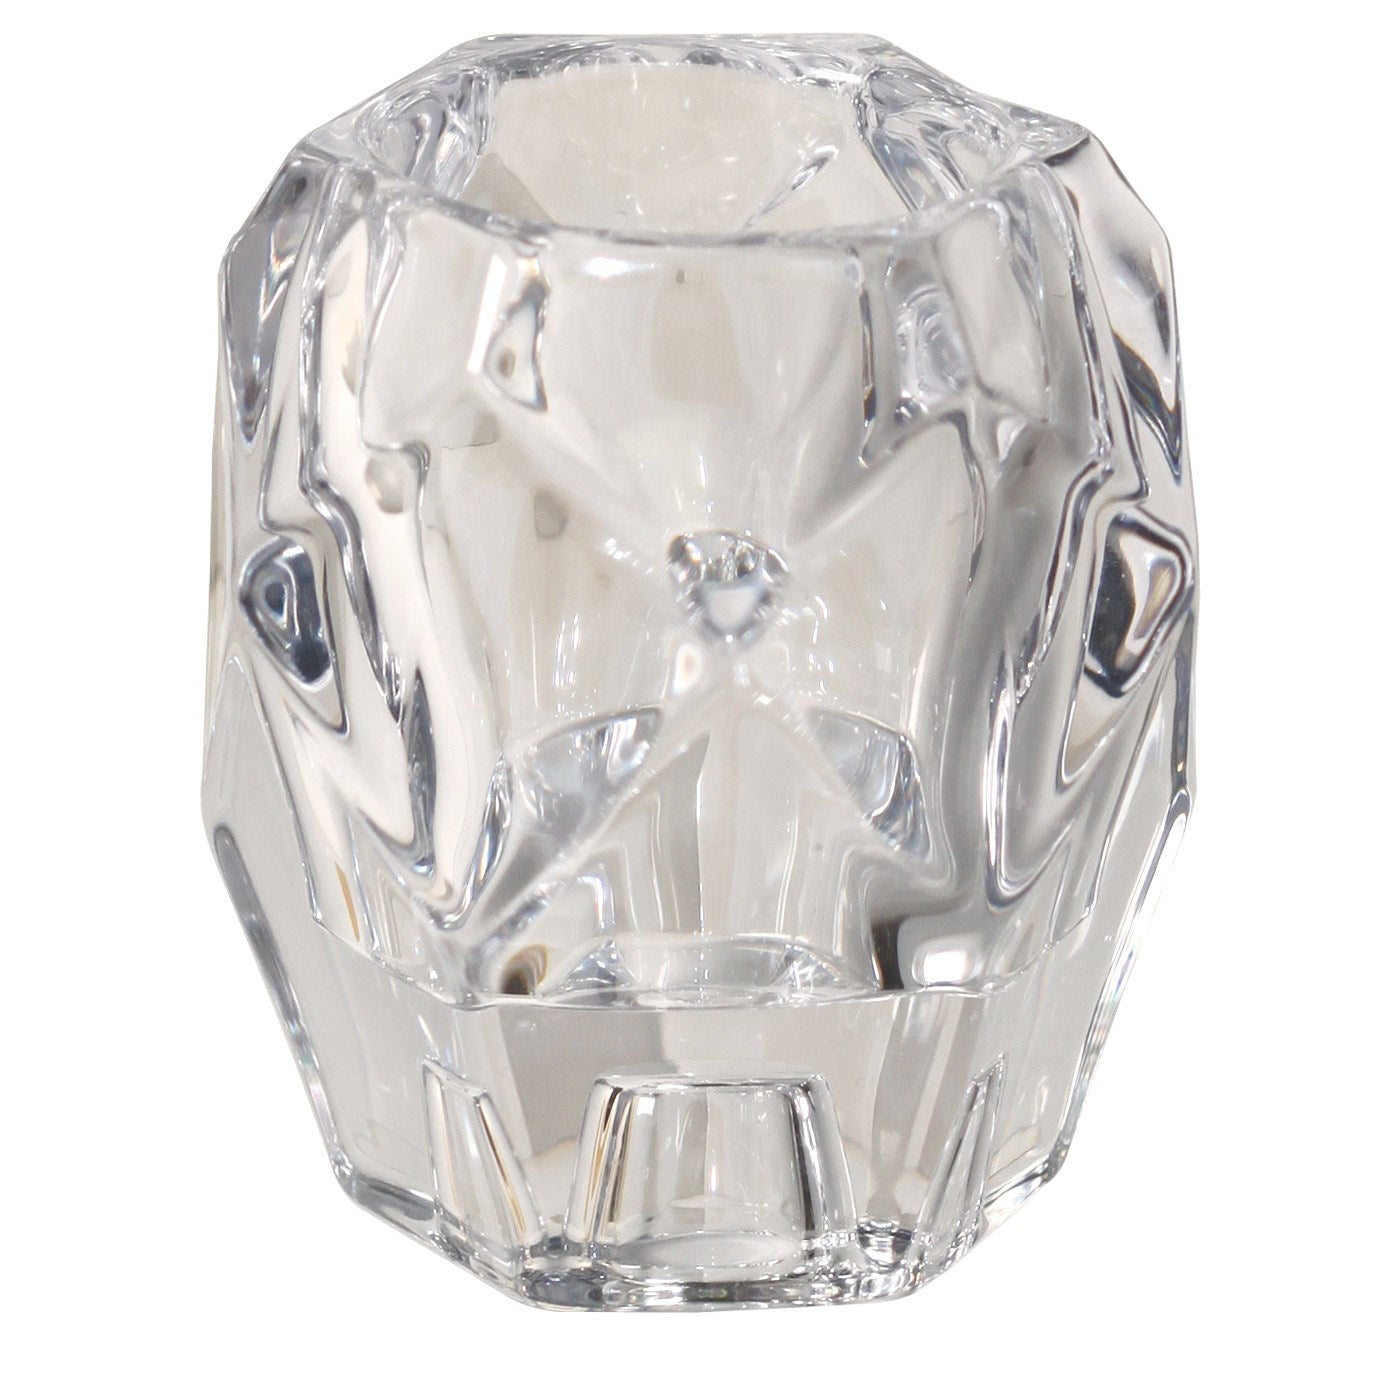 Kye Reversible Glass Taper & Tealight Holder - Large